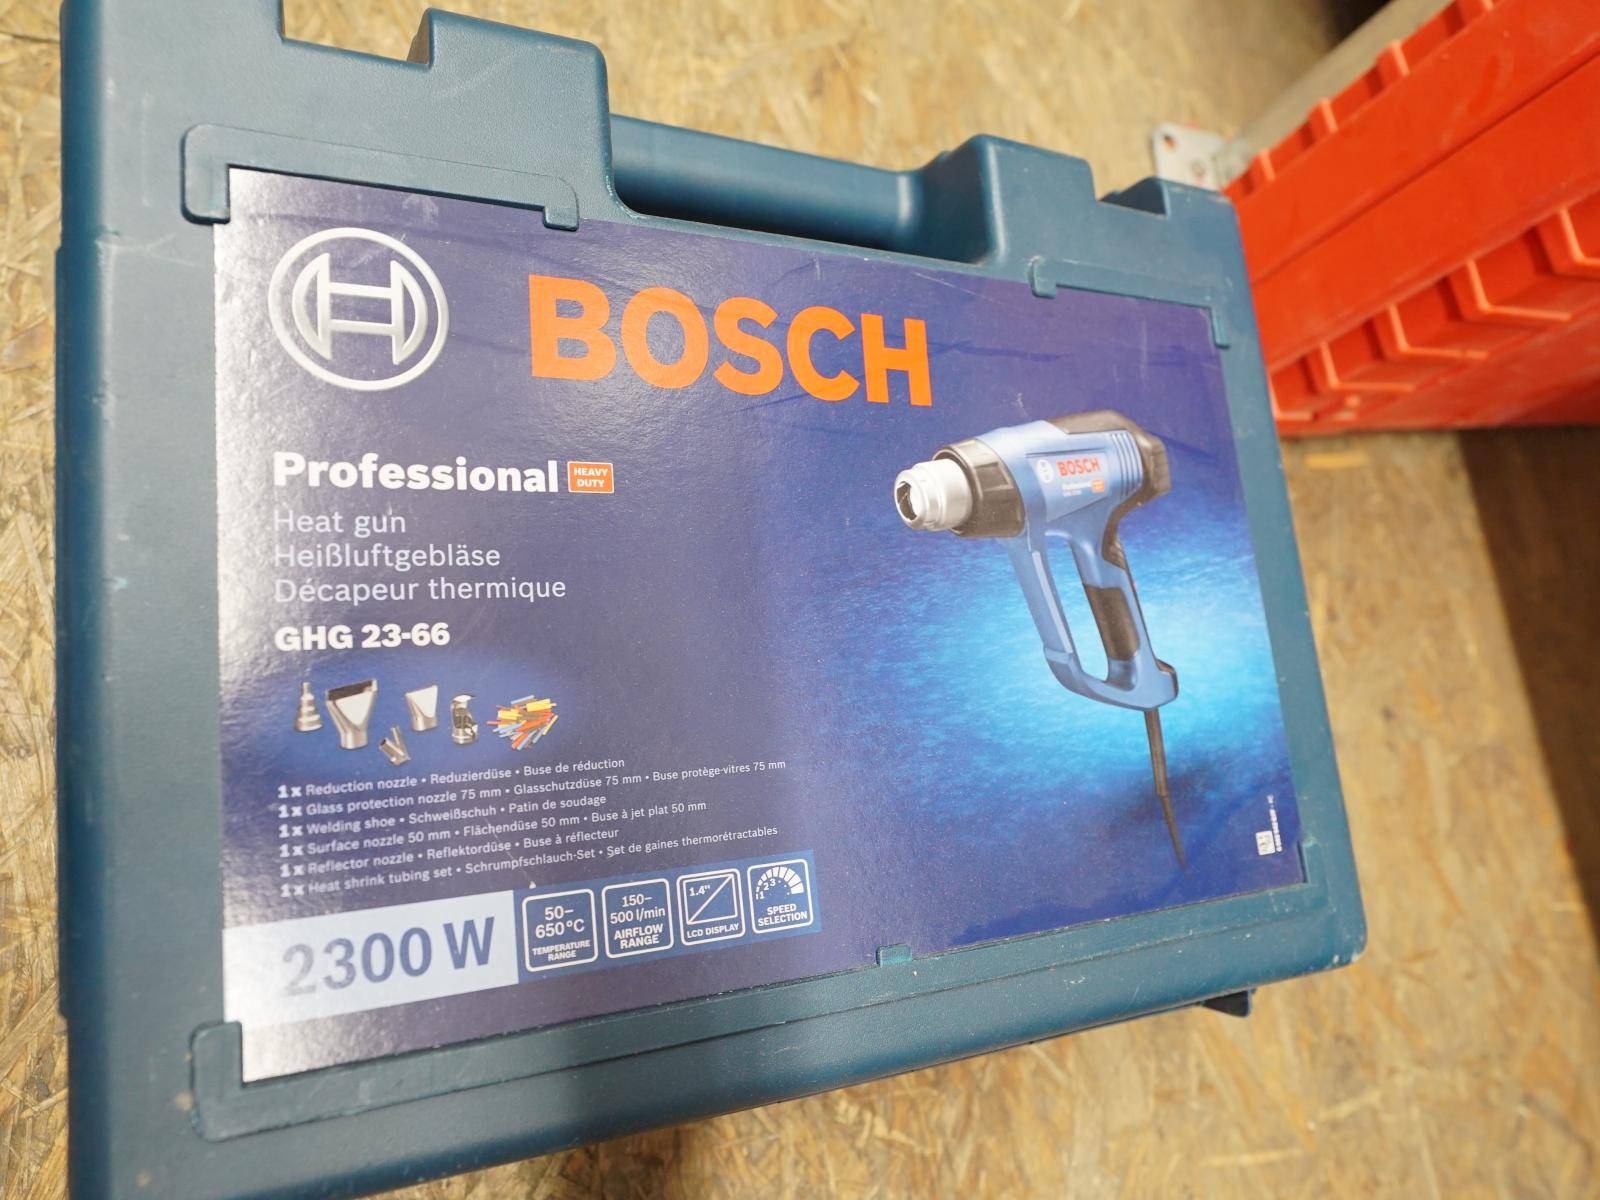 Auction 20.2.24 GHG tool 23-66 GST BOSCH 90 - Power E 